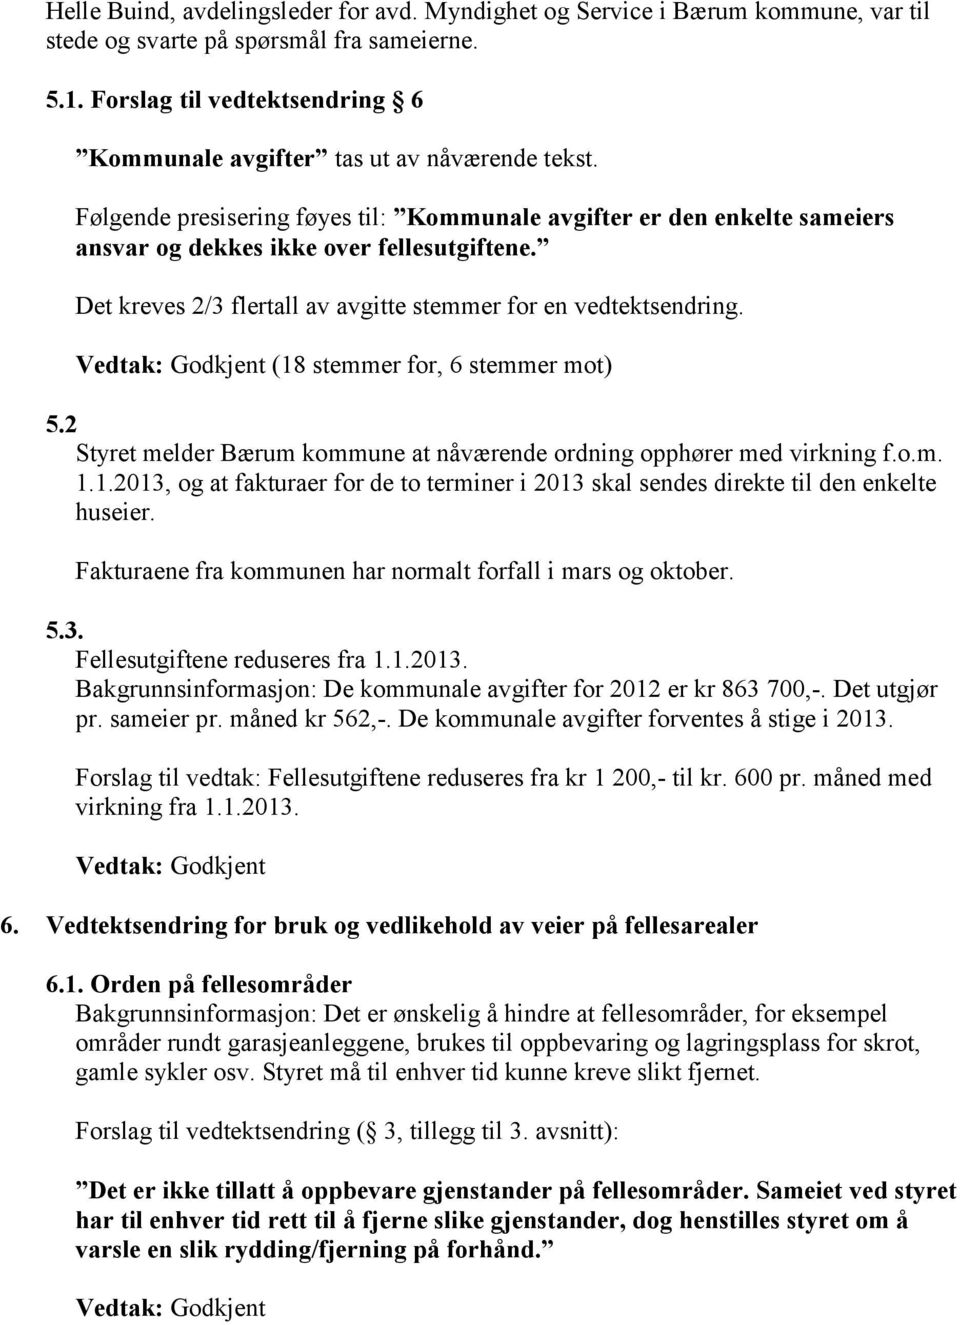 Det kreves 2/3 flertall av avgitte stemmer for en vedtektsendring. (18 stemmer for, 6 stemmer mot) 5.2 Styret melder Bærum kommune at nåværende ordning opphører med virkning f.o.m. 1.1.2013, og at fakturaer for de to terminer i 2013 skal sendes direkte til den enkelte huseier.